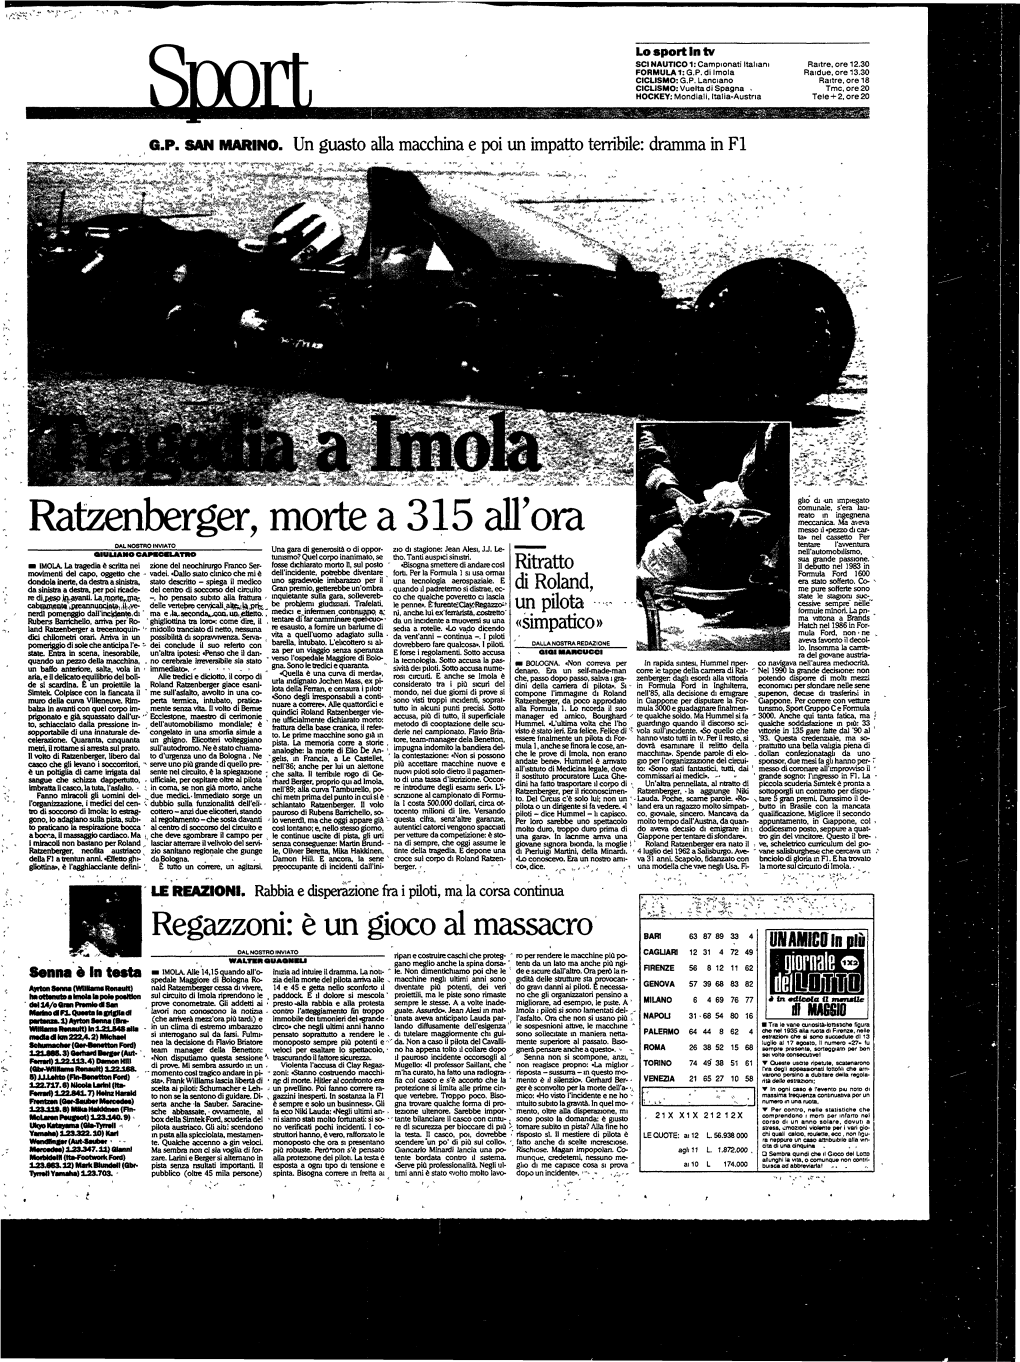 Ratzenberger, Morte a 315 All'ora